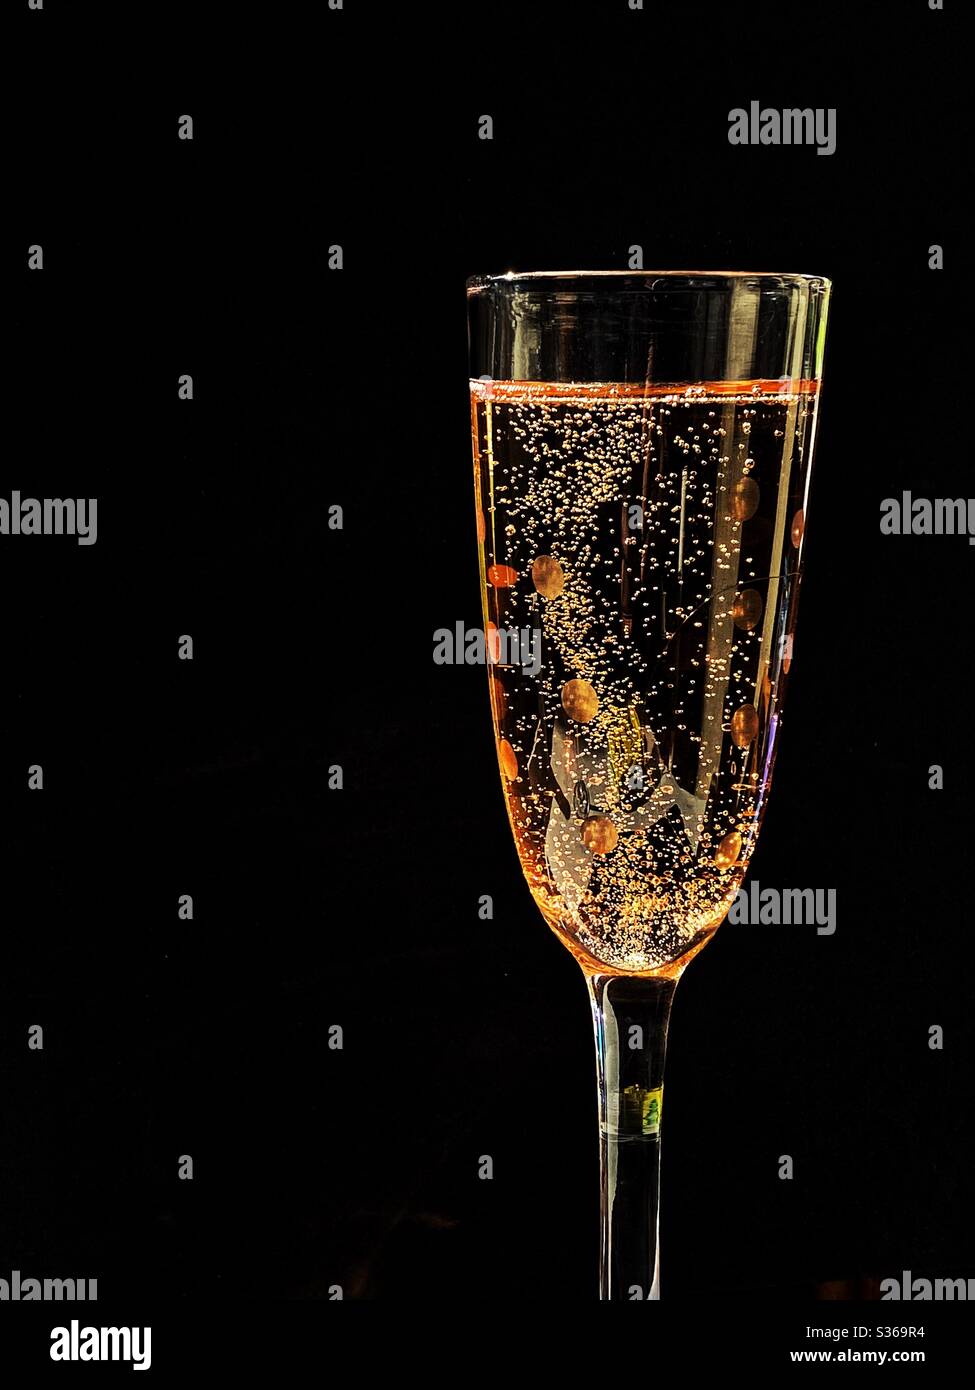 https://c8.alamy.com/compes/s369r4/copa-de-champan-rosa-sobre-fondo-negro-espacio-para-copia-no-hay-gente-s369r4.jpg